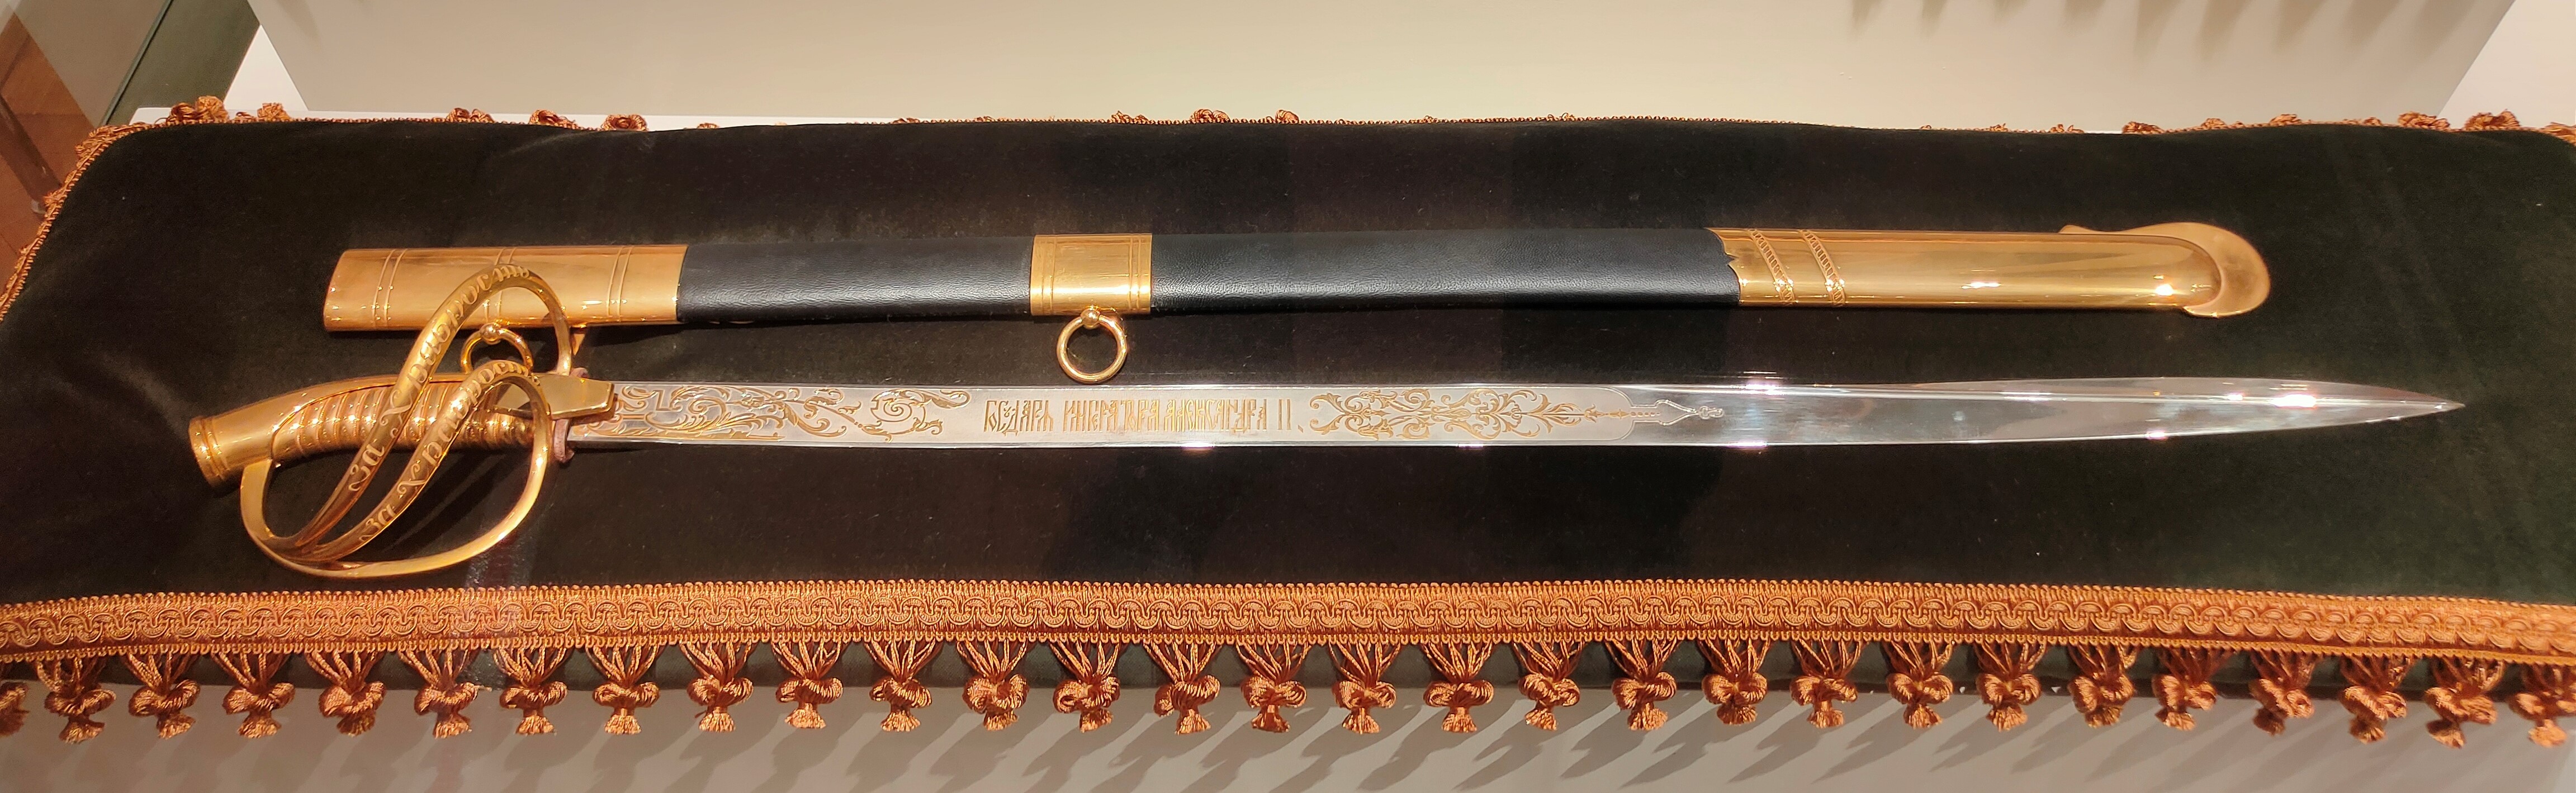 Реплика палаша морского офицерского, подаренного ОСЗ императору Александру II